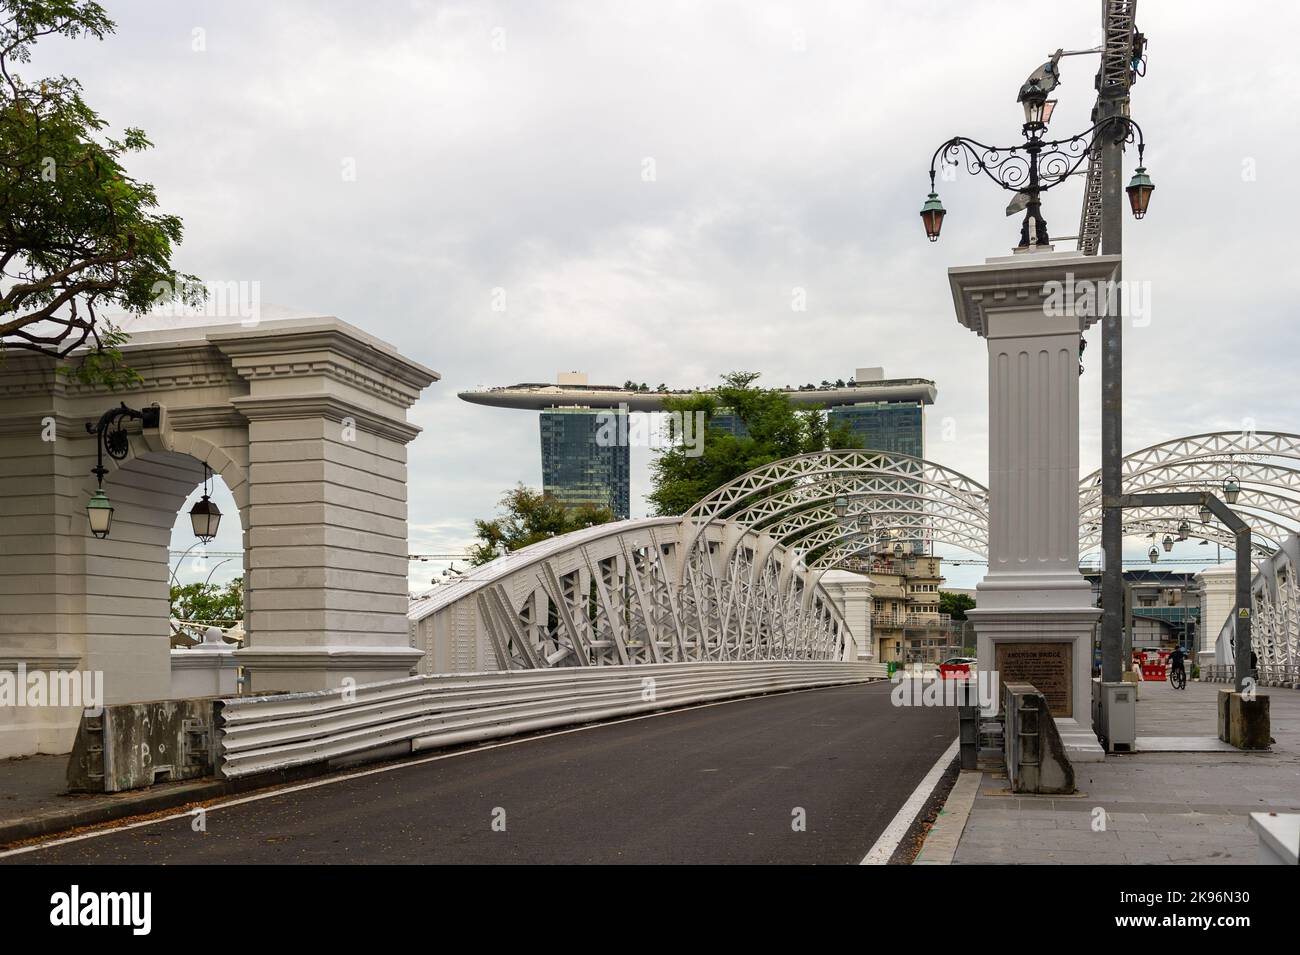 Die Anderson Bridge, Singapur, unmittelbar nach dem Straßenrennen F1 Stockfoto